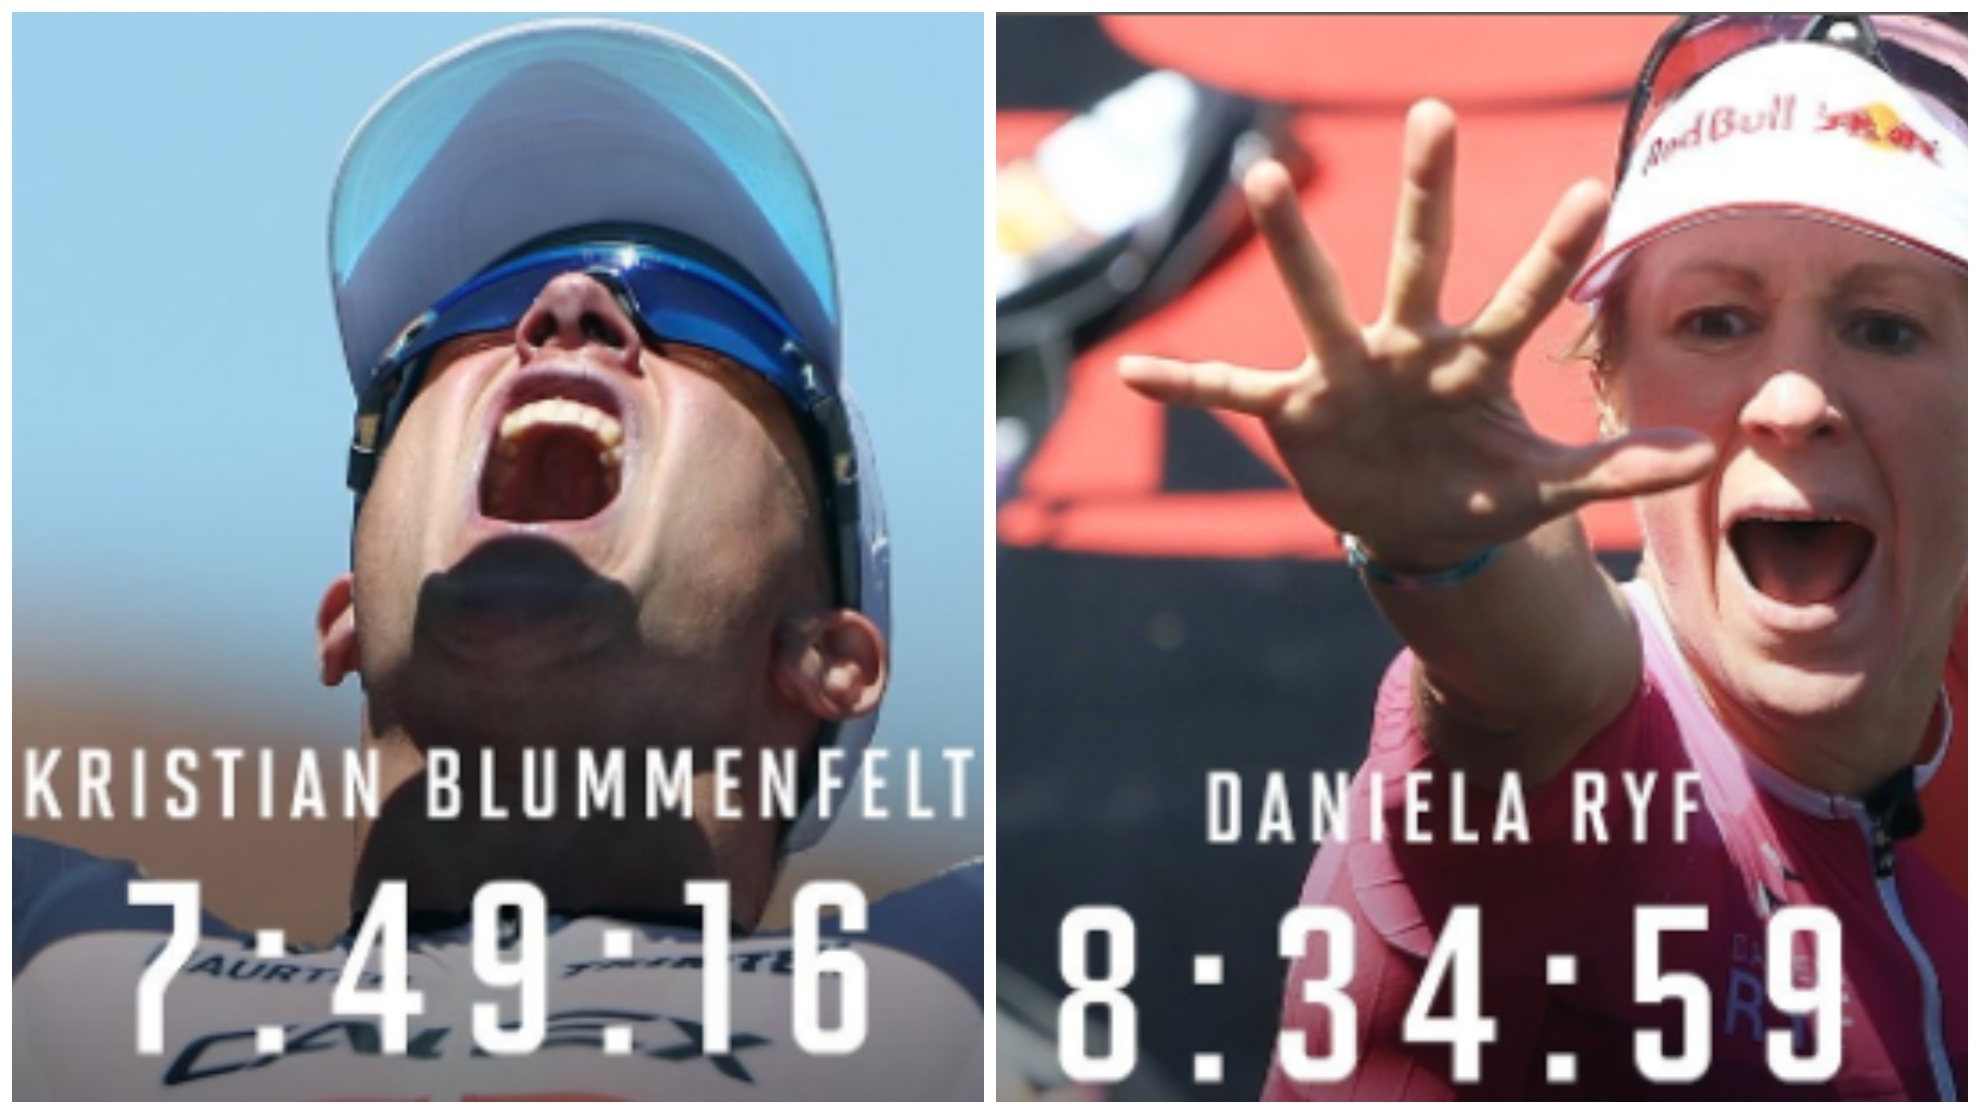 Blummenfelt y Ryf, campeones mundiales de Ironman en St. George